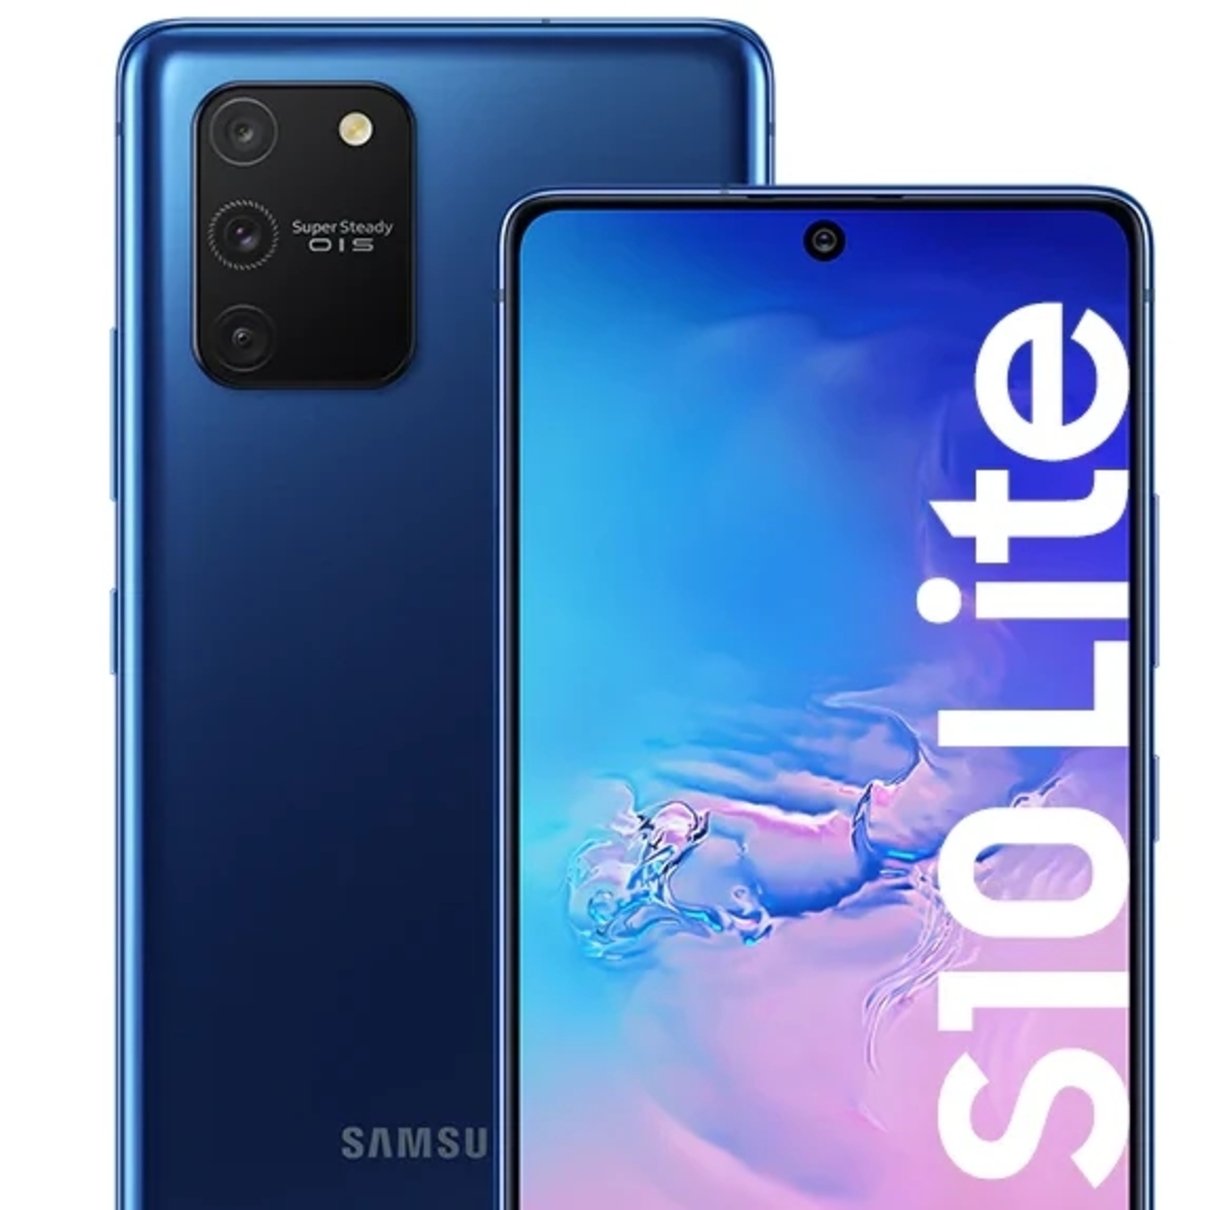 Samsung-Galaxy-S10-Lite